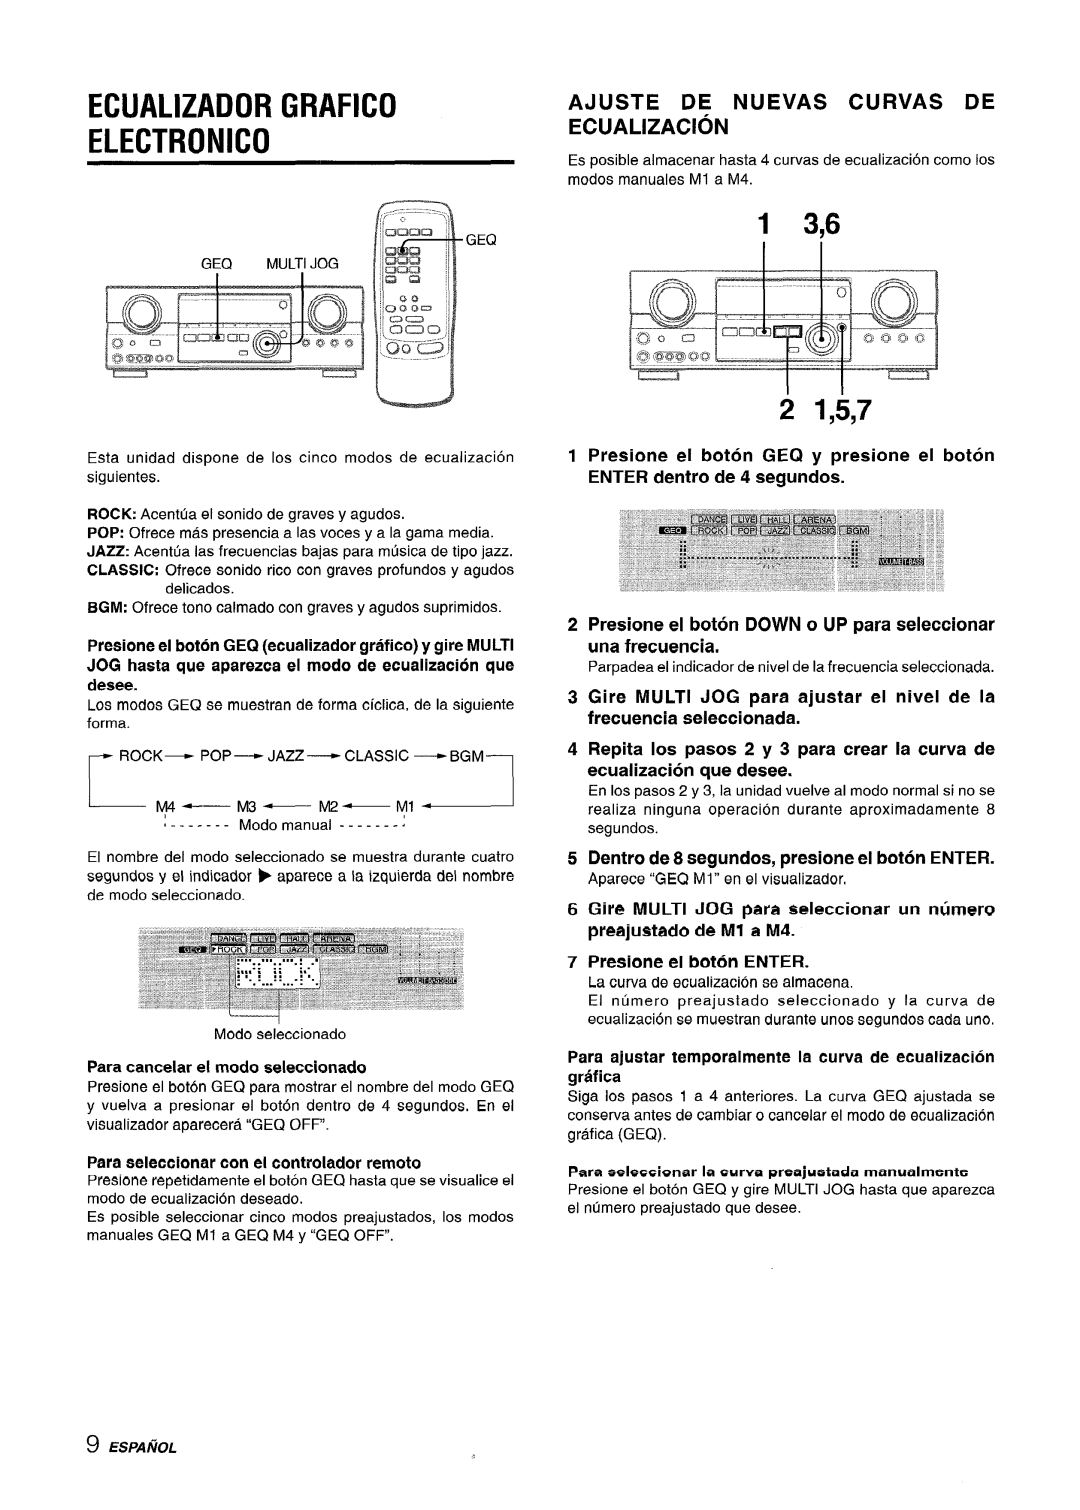 Sony AV-DV75 manual Ecualizador Grafico Electronic, 1 3,6 2 1,5,7, Ajuste De Nuevas Curvas De Ecualizacion 